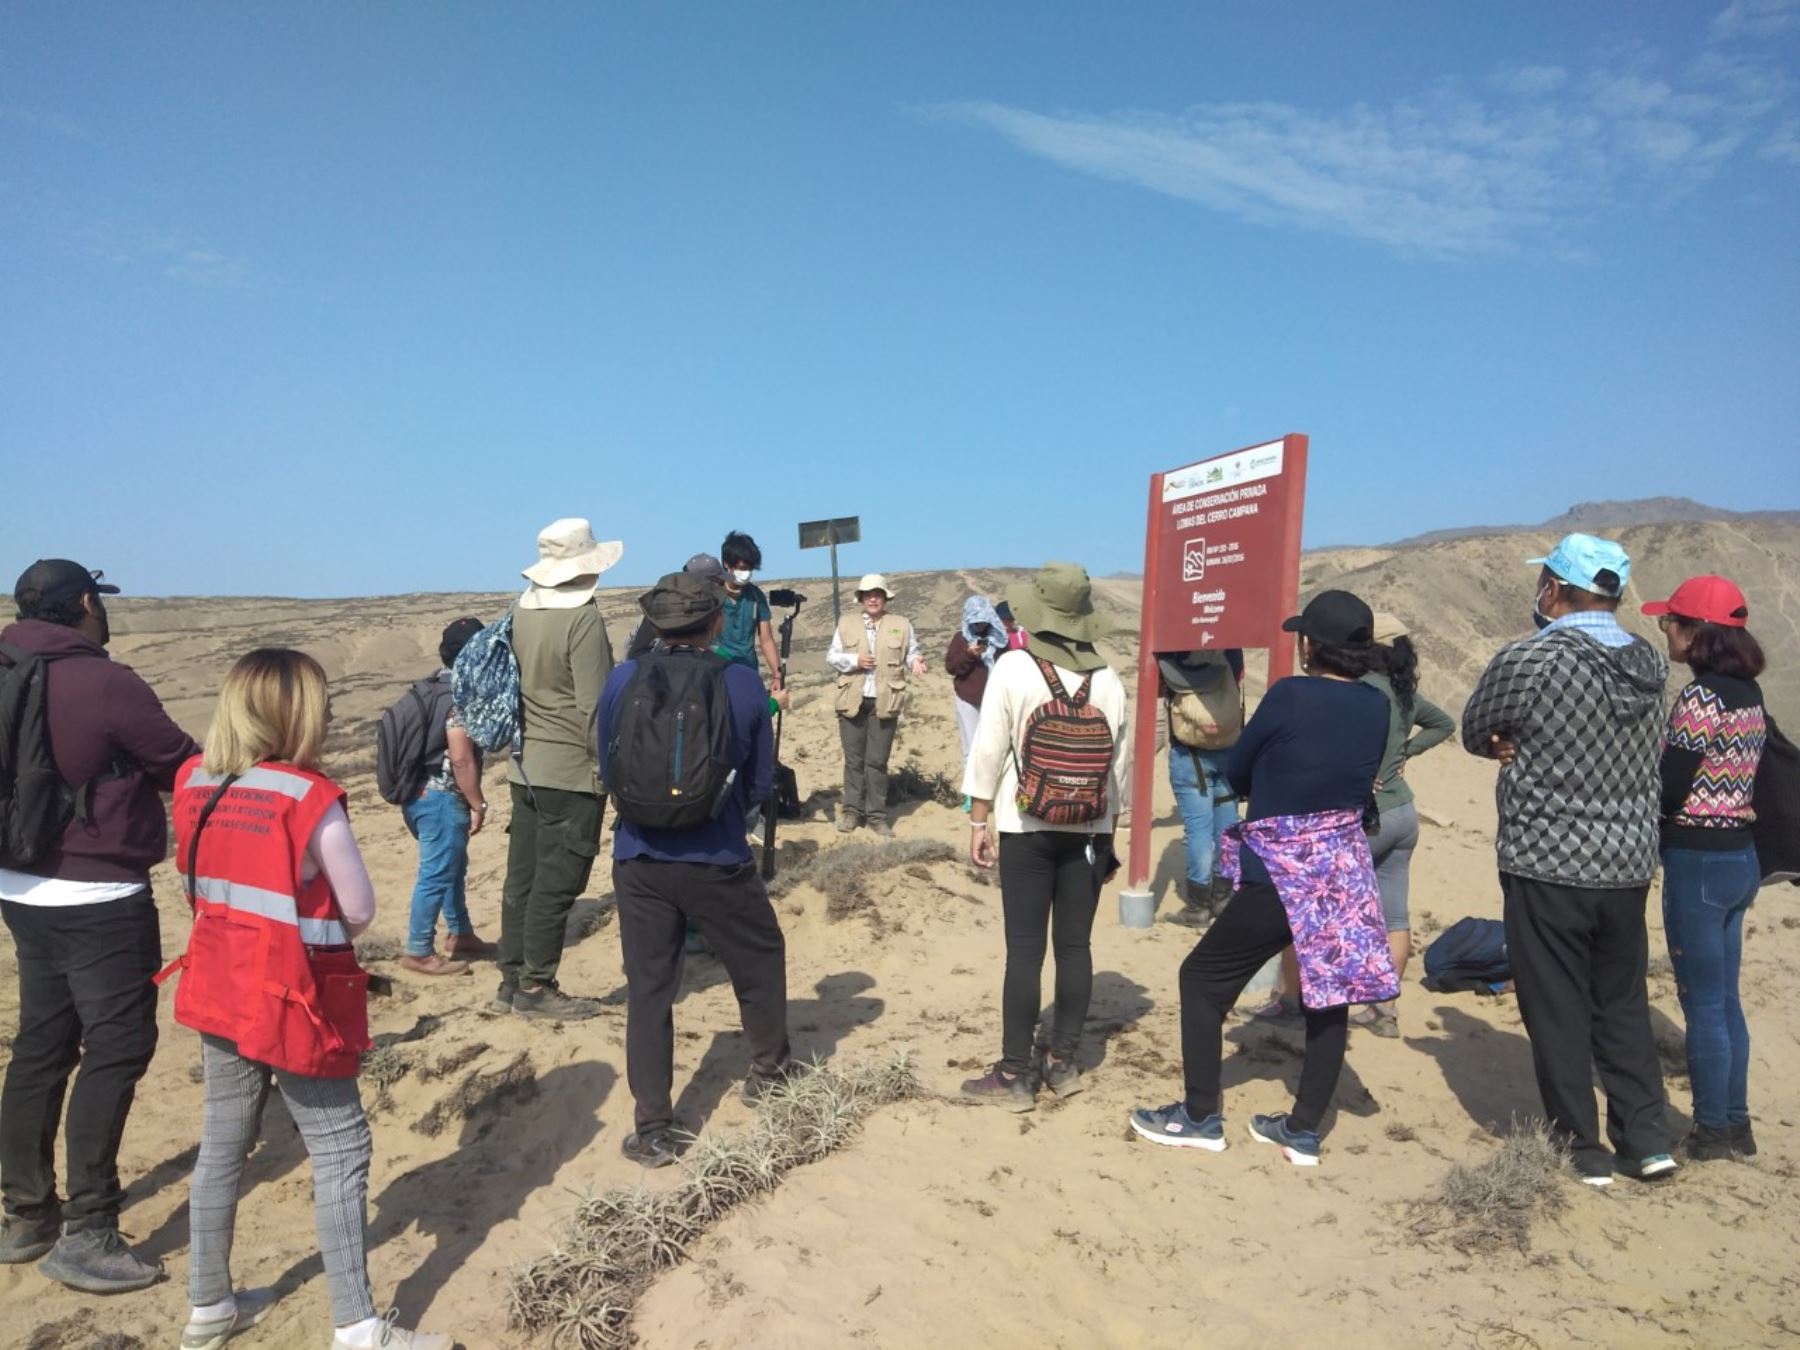 La Universidad Nacional de Trujillo presentó la guía turística de las lomas del cerro Campana, ubicada en el distrito de Huanchaco, para impulsar el desarrollo del ecoturismo en la zona. Foto: ANDINA/difusión.